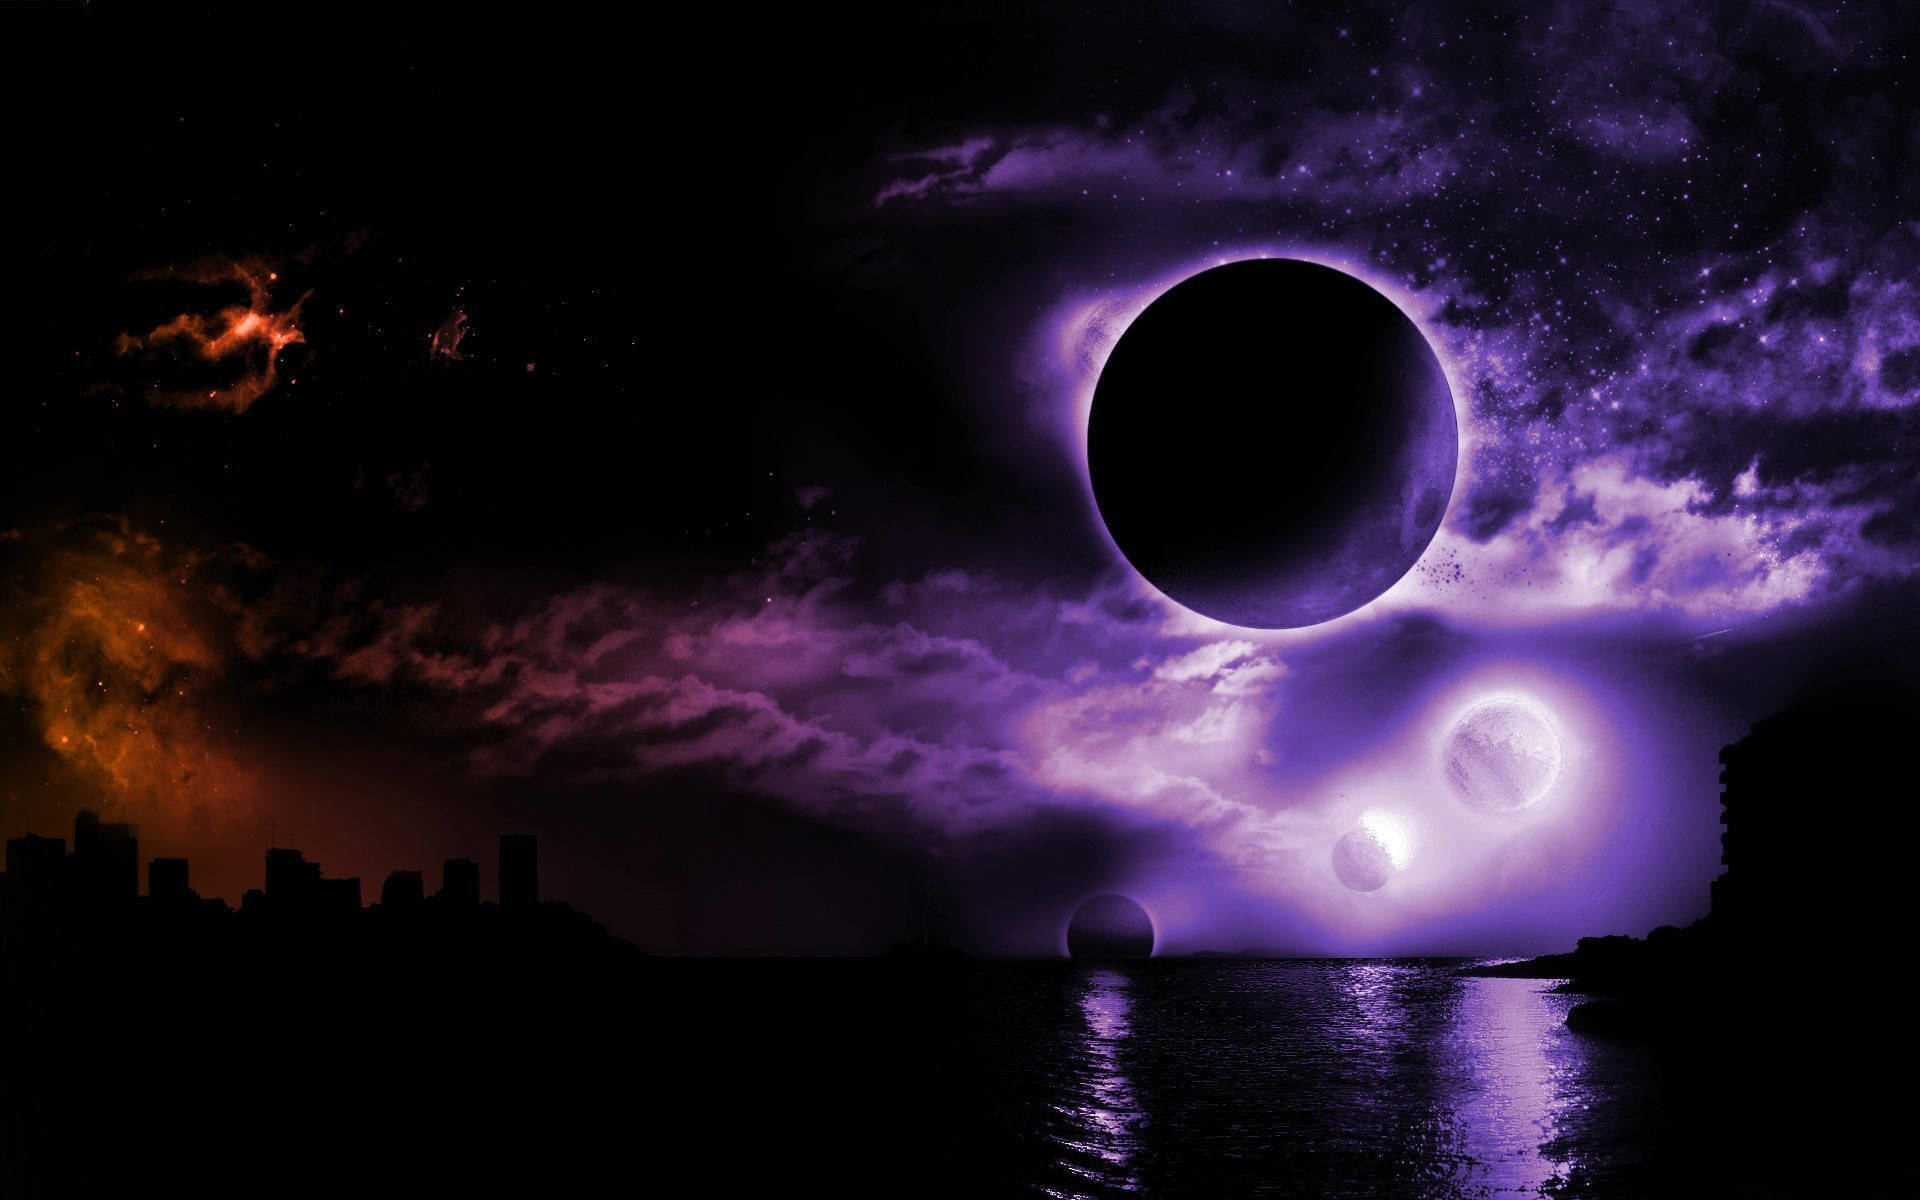 Fantasy Eclipse Dark Purple And Black Wallpaper